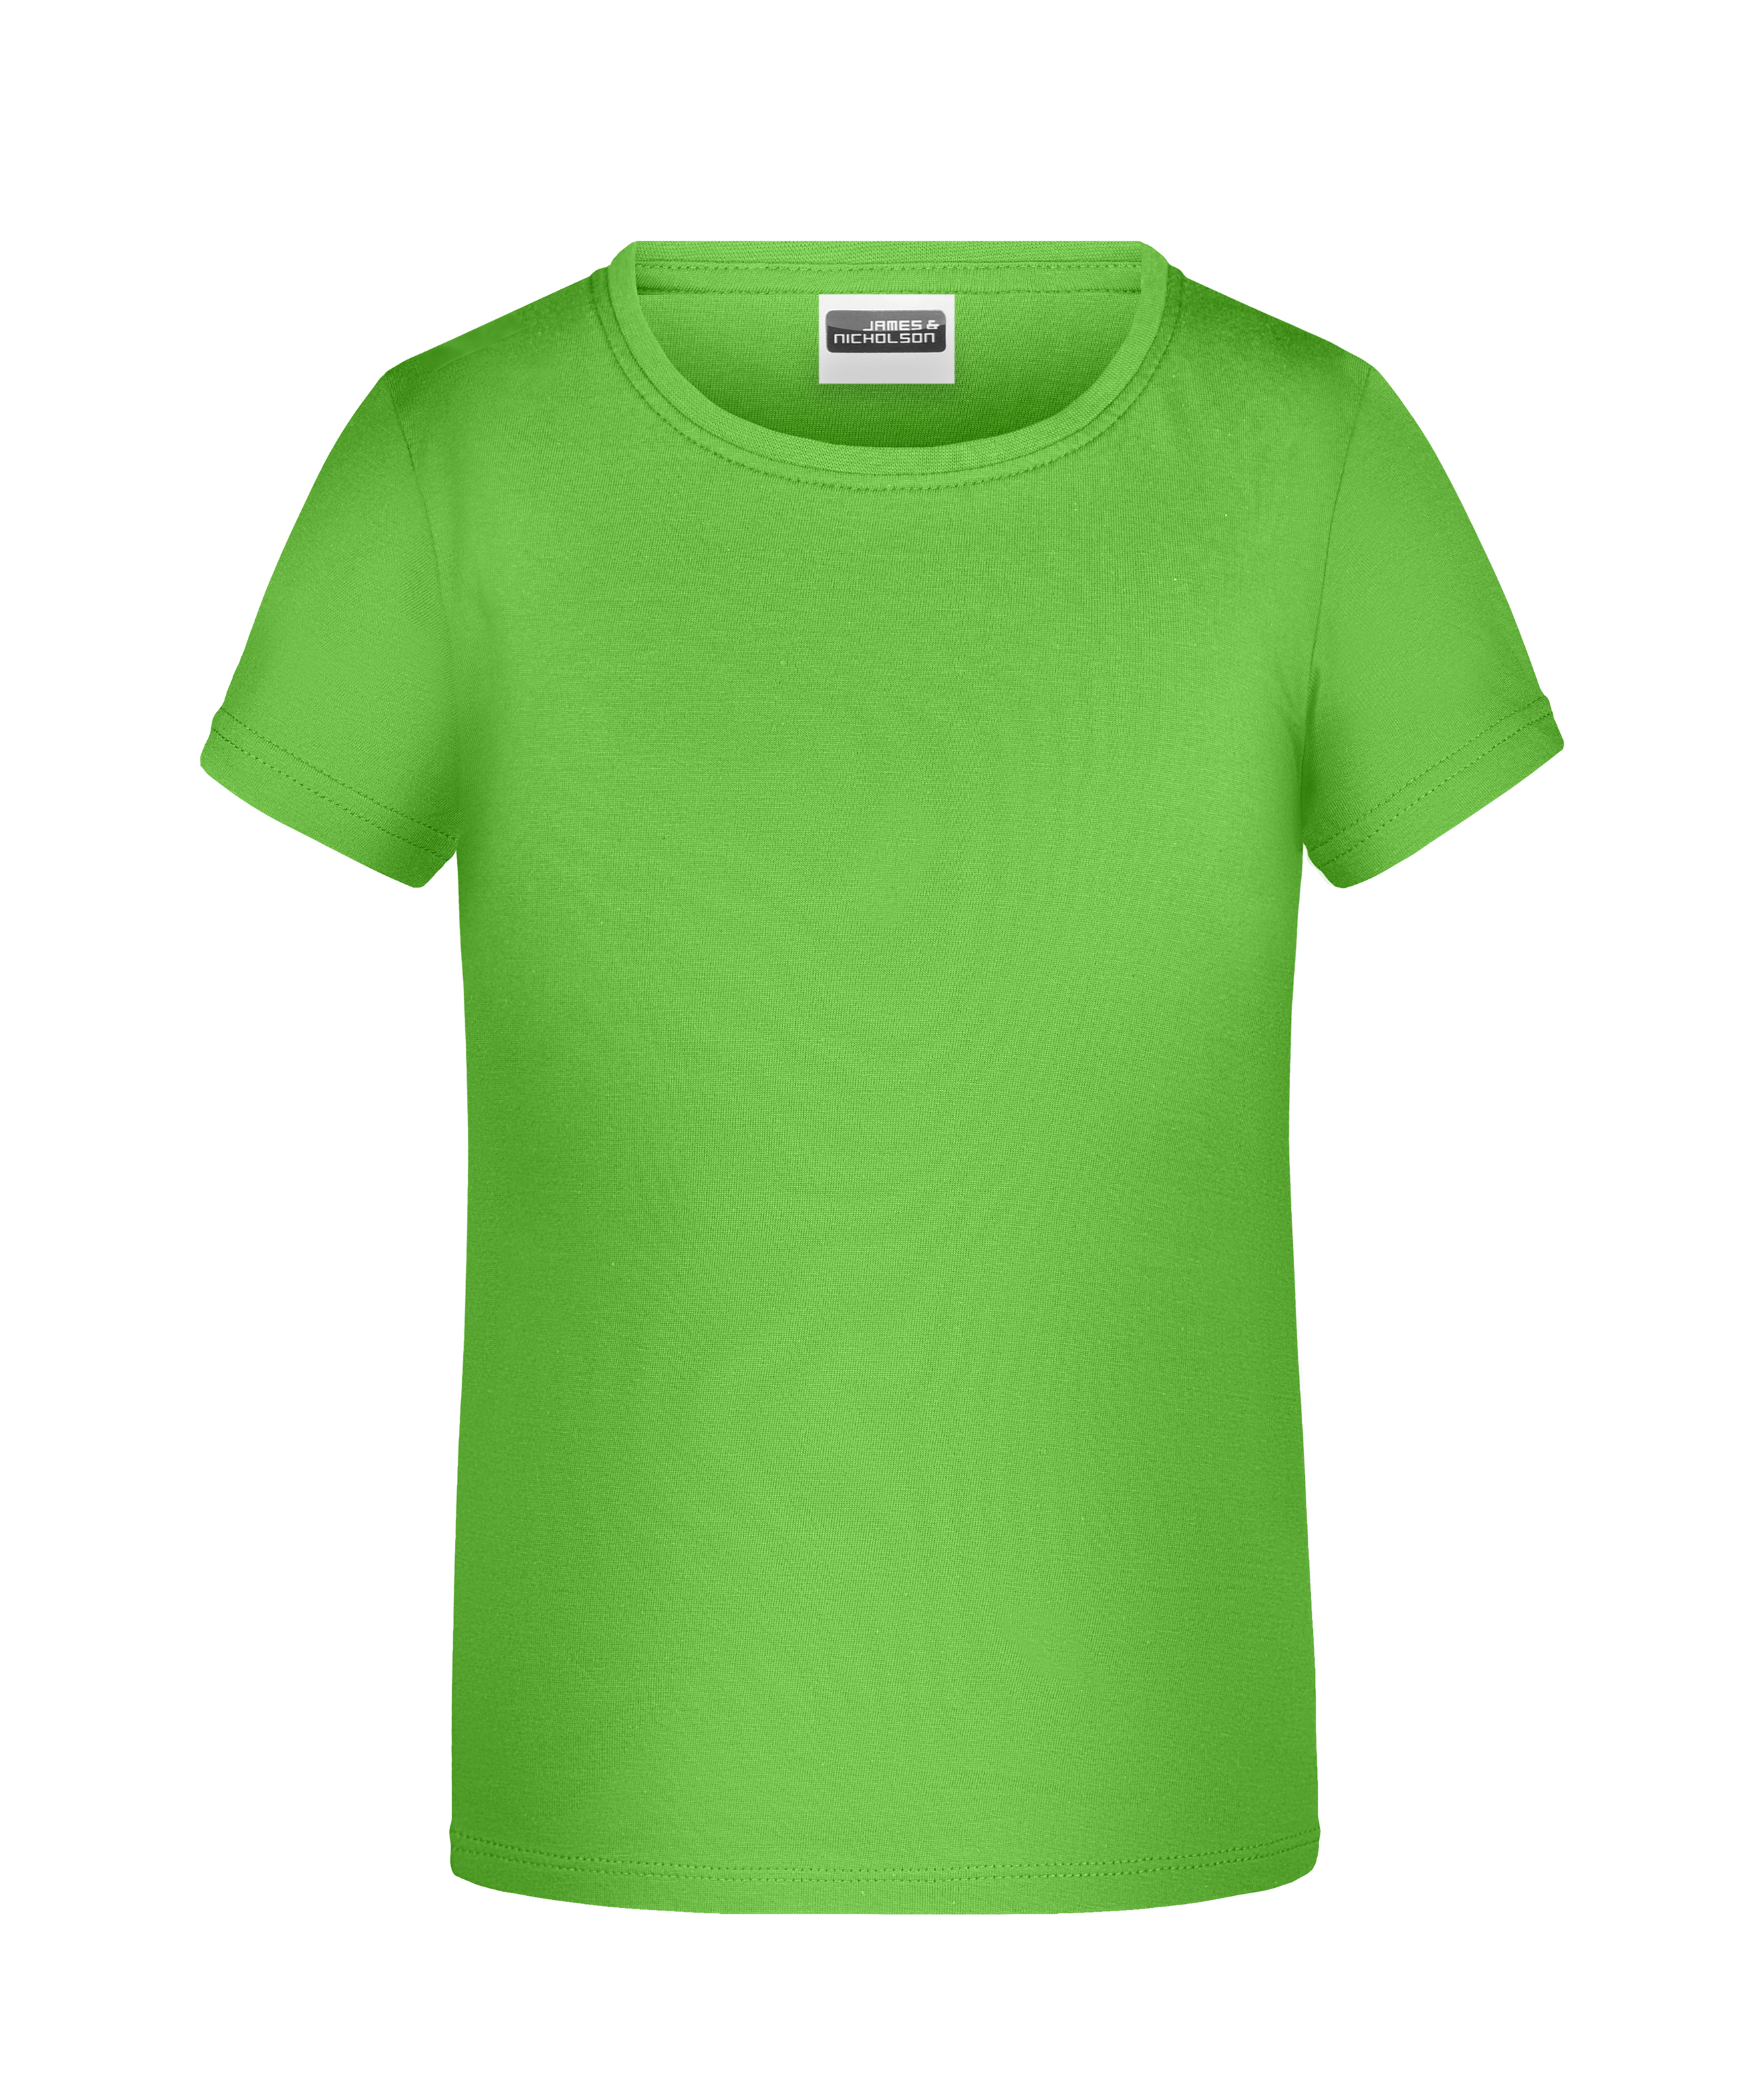 Promo-T Girl 150 JN744 Klassisches T-Shirt für Kinder